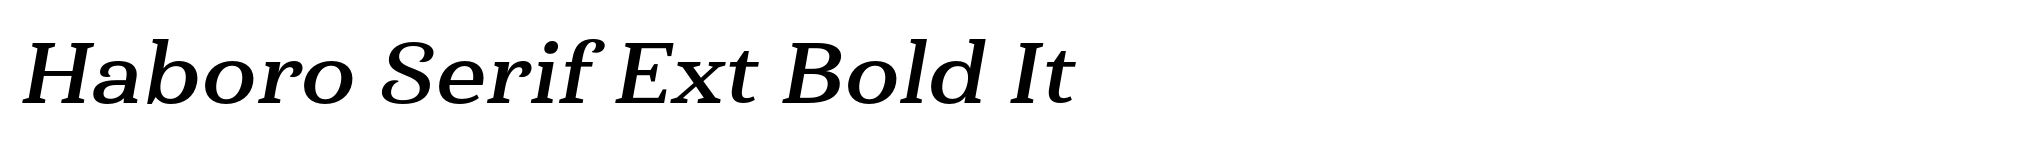 Haboro Serif Ext Bold It image